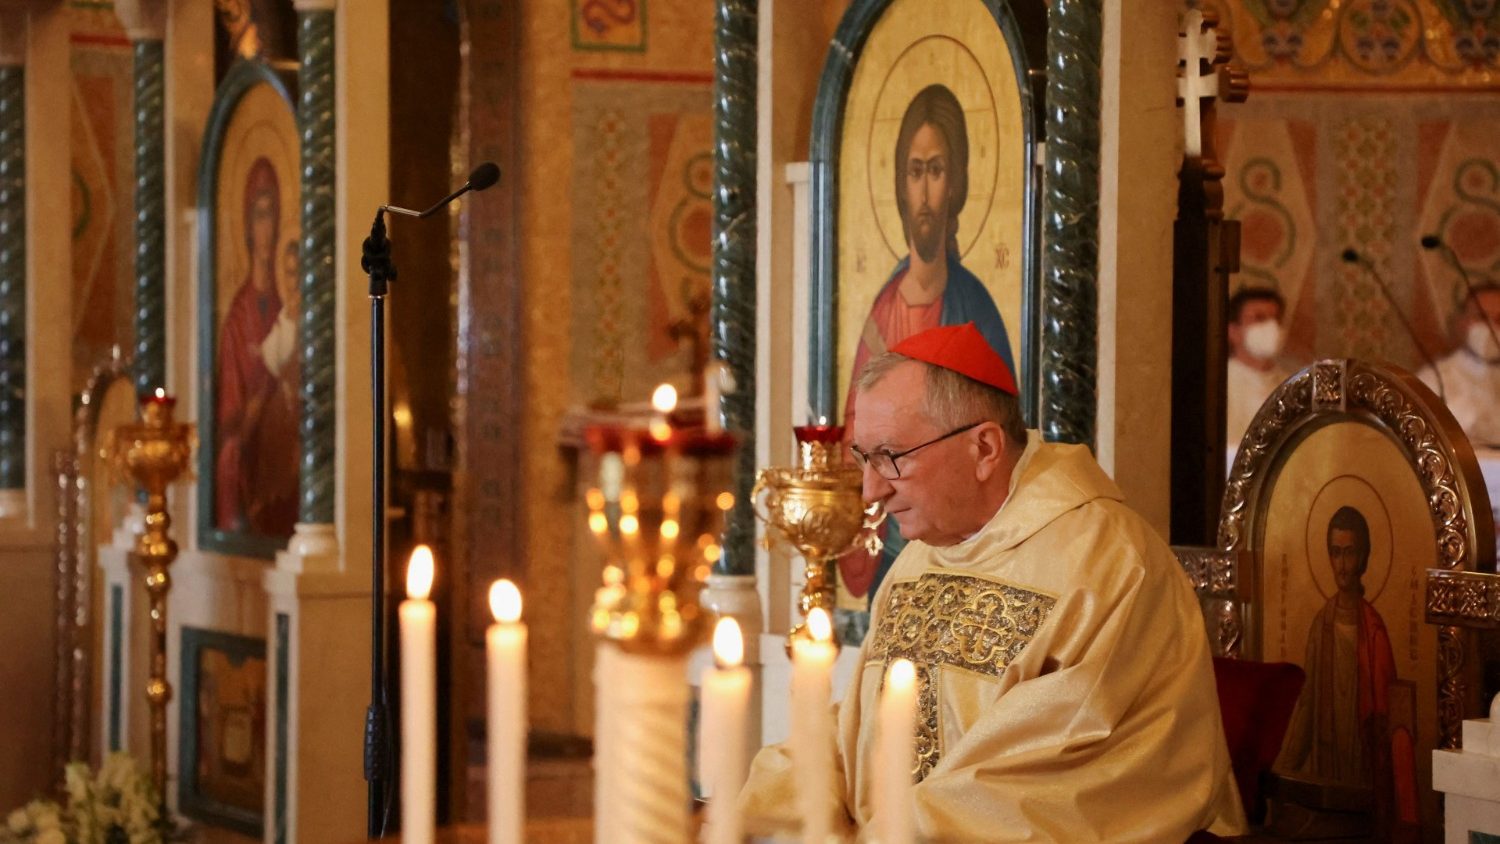 Госсекретарь Ватикана заявил, что отношения с РПЦ осложнились, но каналы для диалога остаются